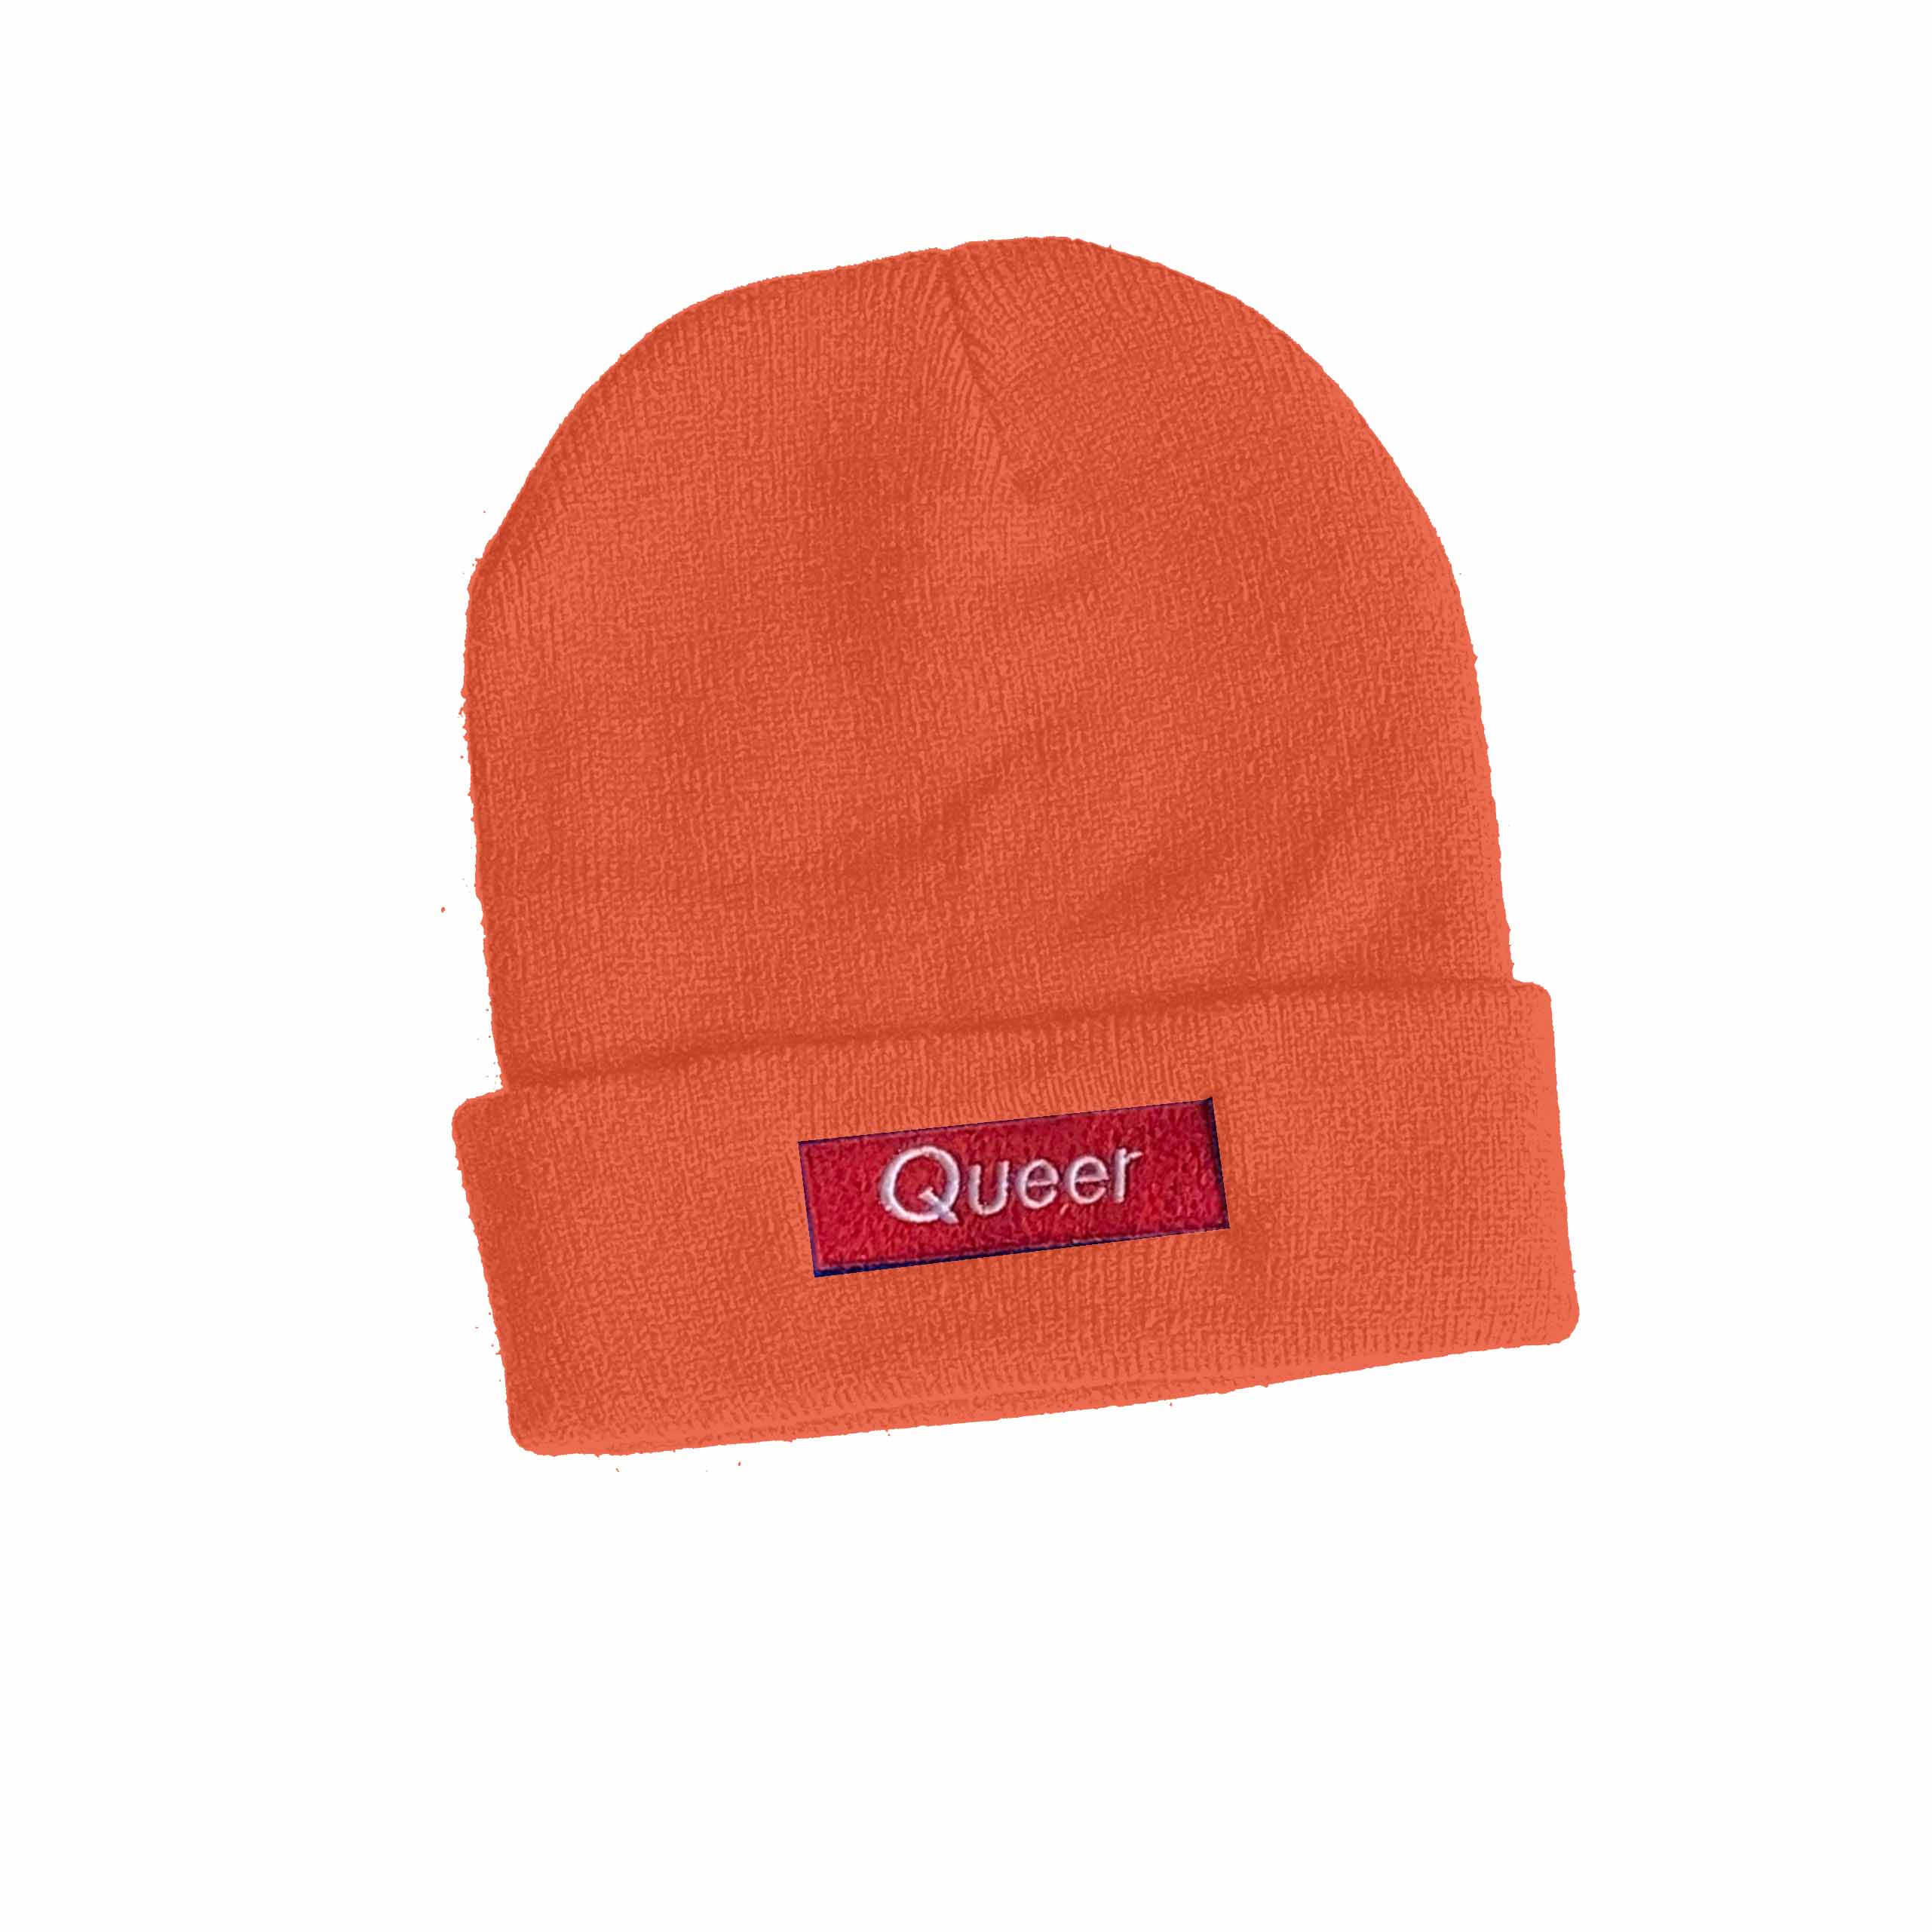 queer knit cuff beanie blaze orange